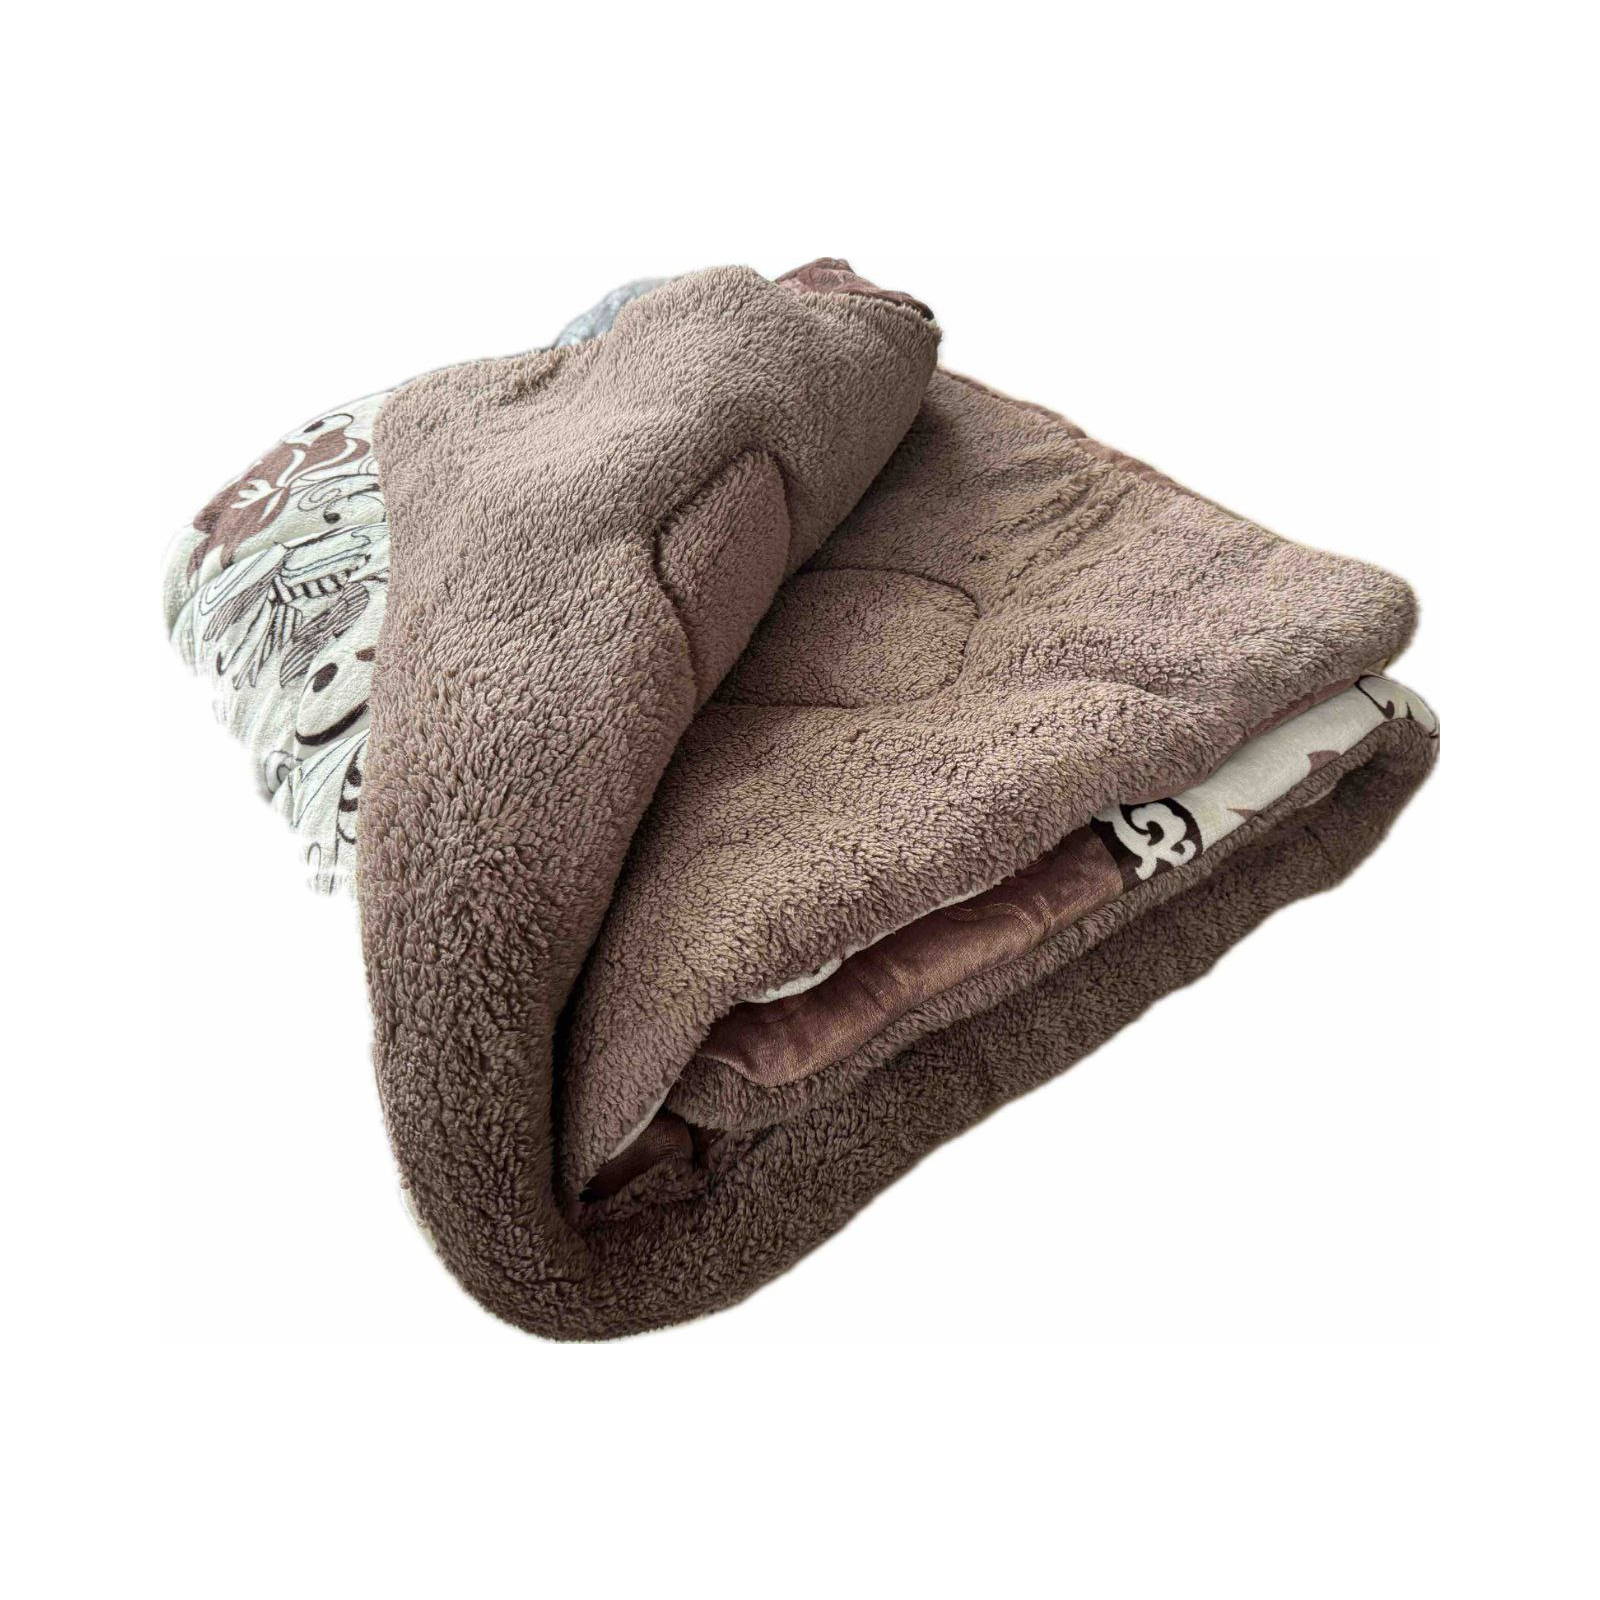 Одеяло Casablanket зимнее Искусственная шерсть Коричневое полуторное 150х215 (150Flanely_коричнева)